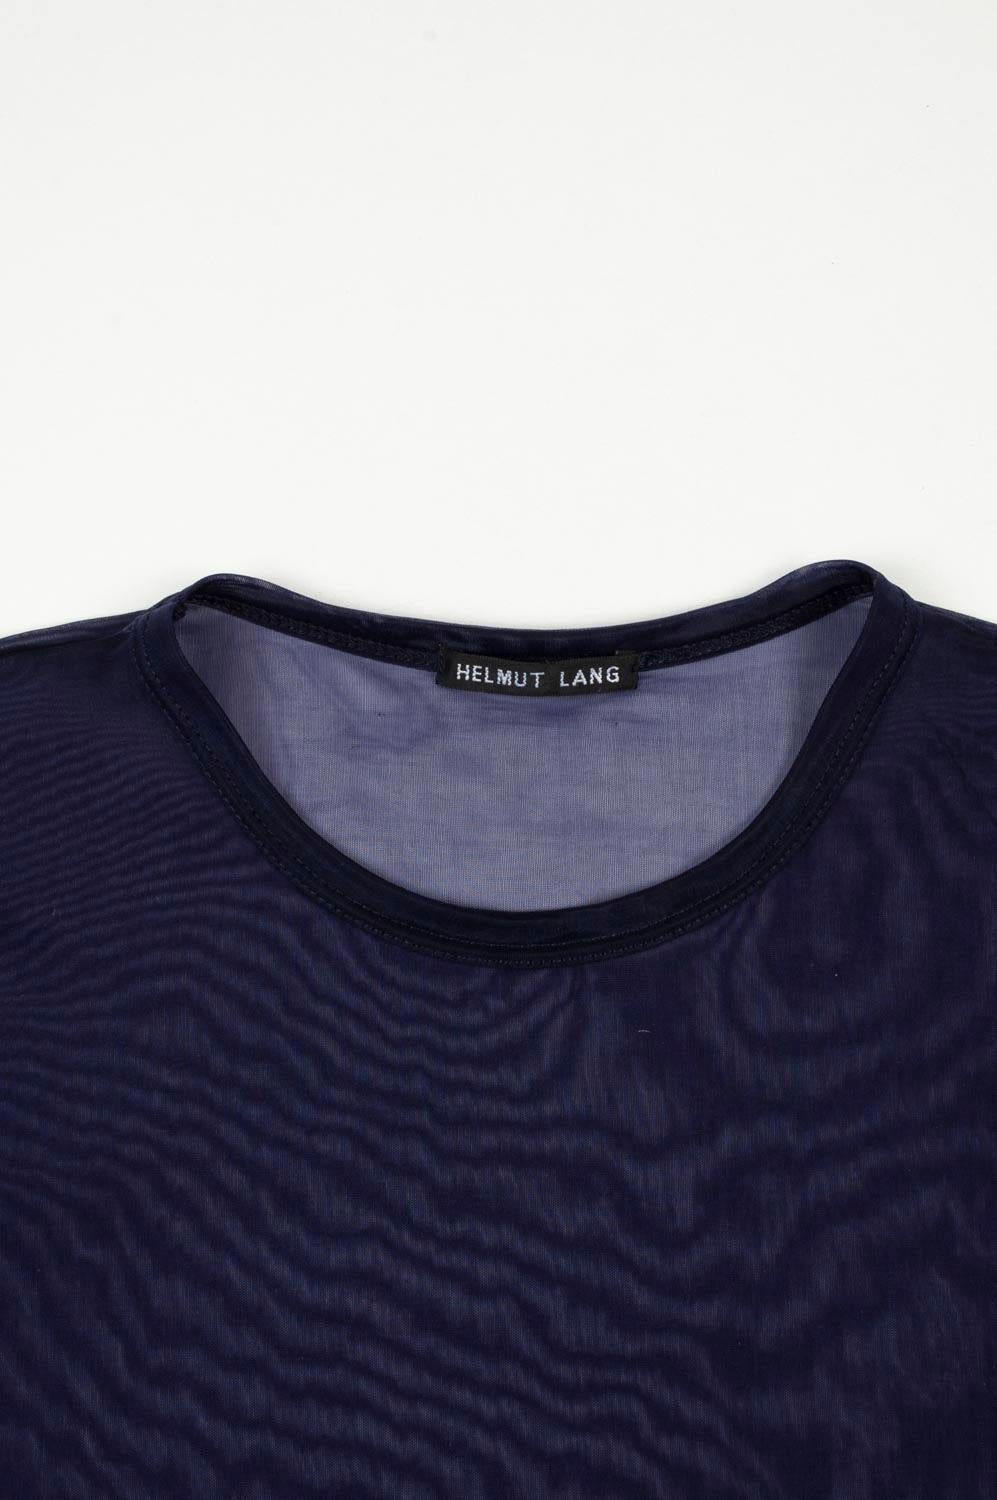 100% echtes vintage Helmut Lang Vintage Herren T-Shirt 
Farbe: Blau
(Eine tatsächliche Farbe kann ein wenig variieren aufgrund individueller Computer-Bildschirm Interpretation)
MATERIAL: Waschetikett nicht vorhanden, aber es ist Polyamid.
Tag Größe: